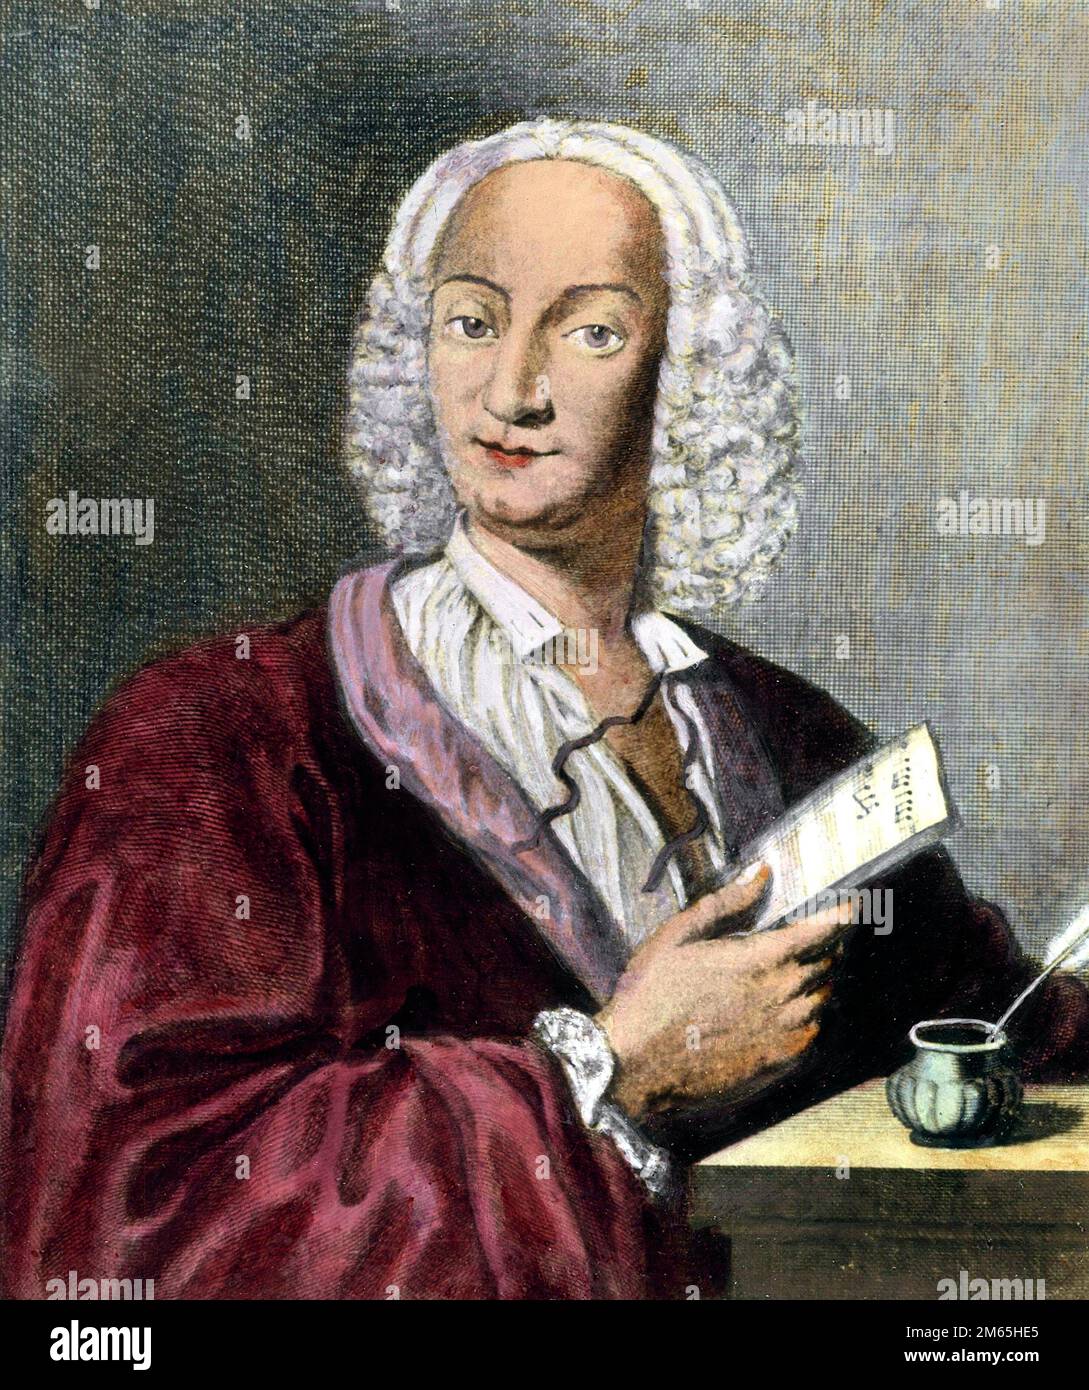 A cargo de Antonio Vivaldi. Retrato del compositor y violinista italiano Antonio Lucio Vivaldi (1678-1741), grabado por François Morellon de La Cave, 1725 Foto de stock